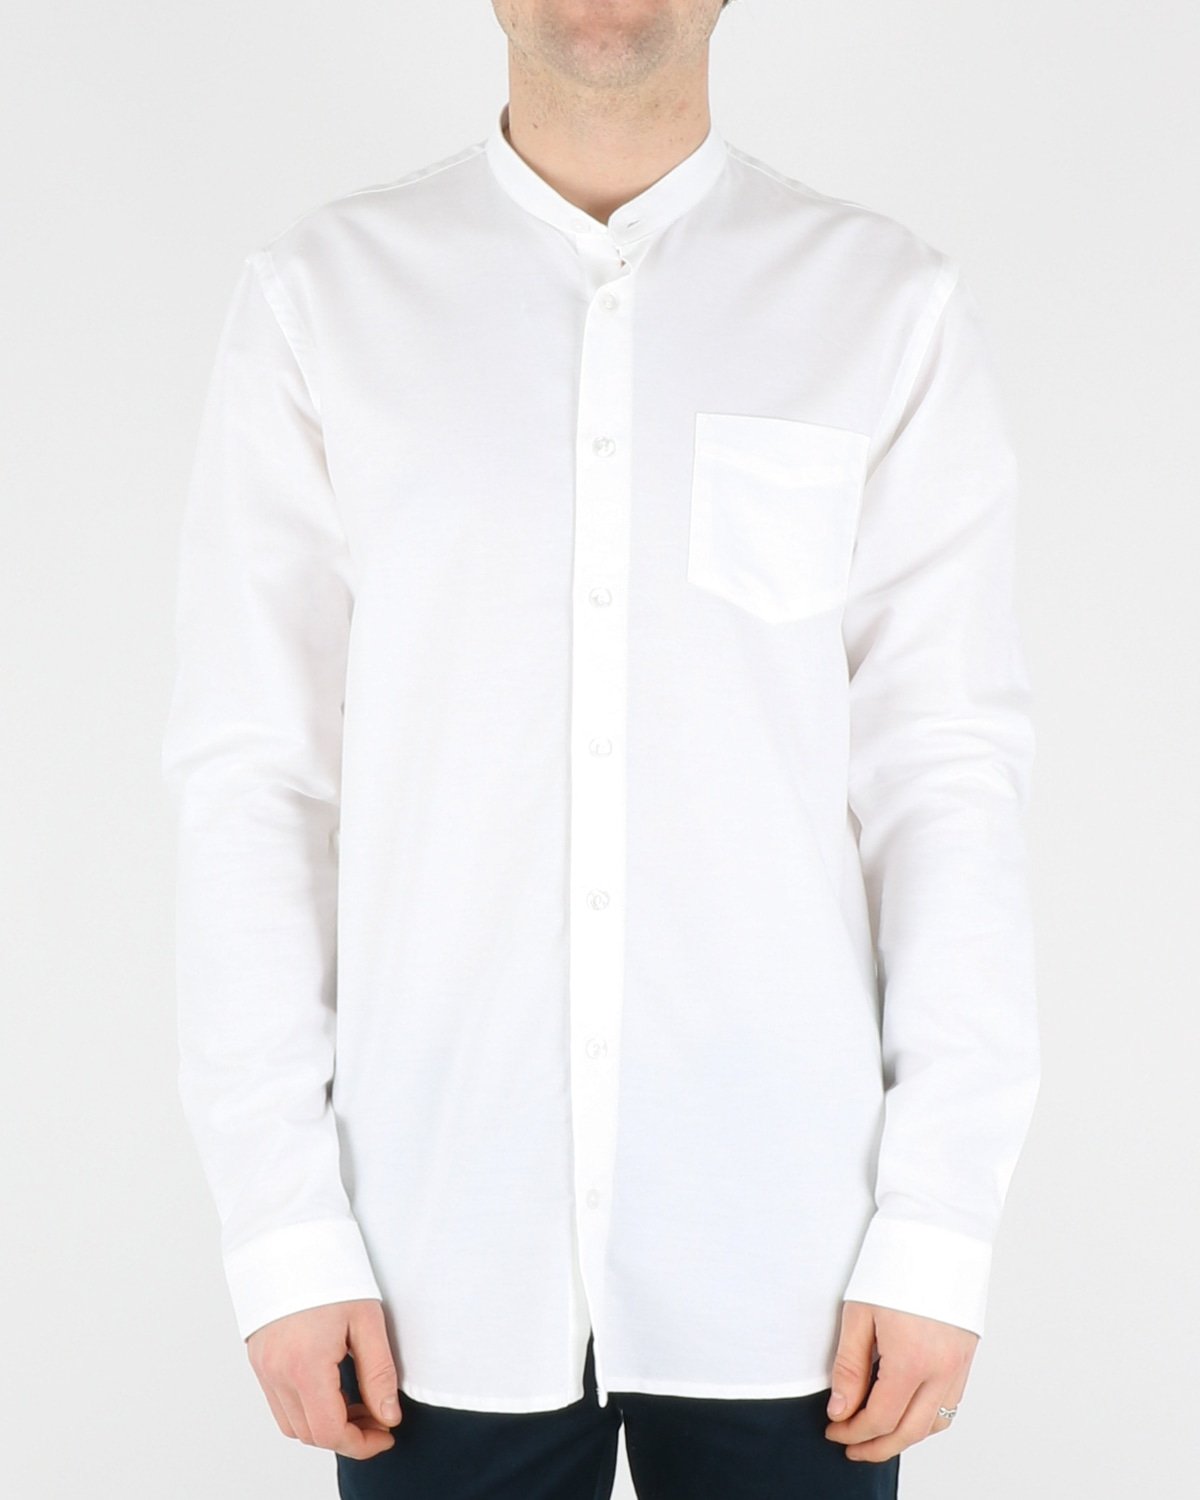 libertine libertine_factory shirt_white_1_4